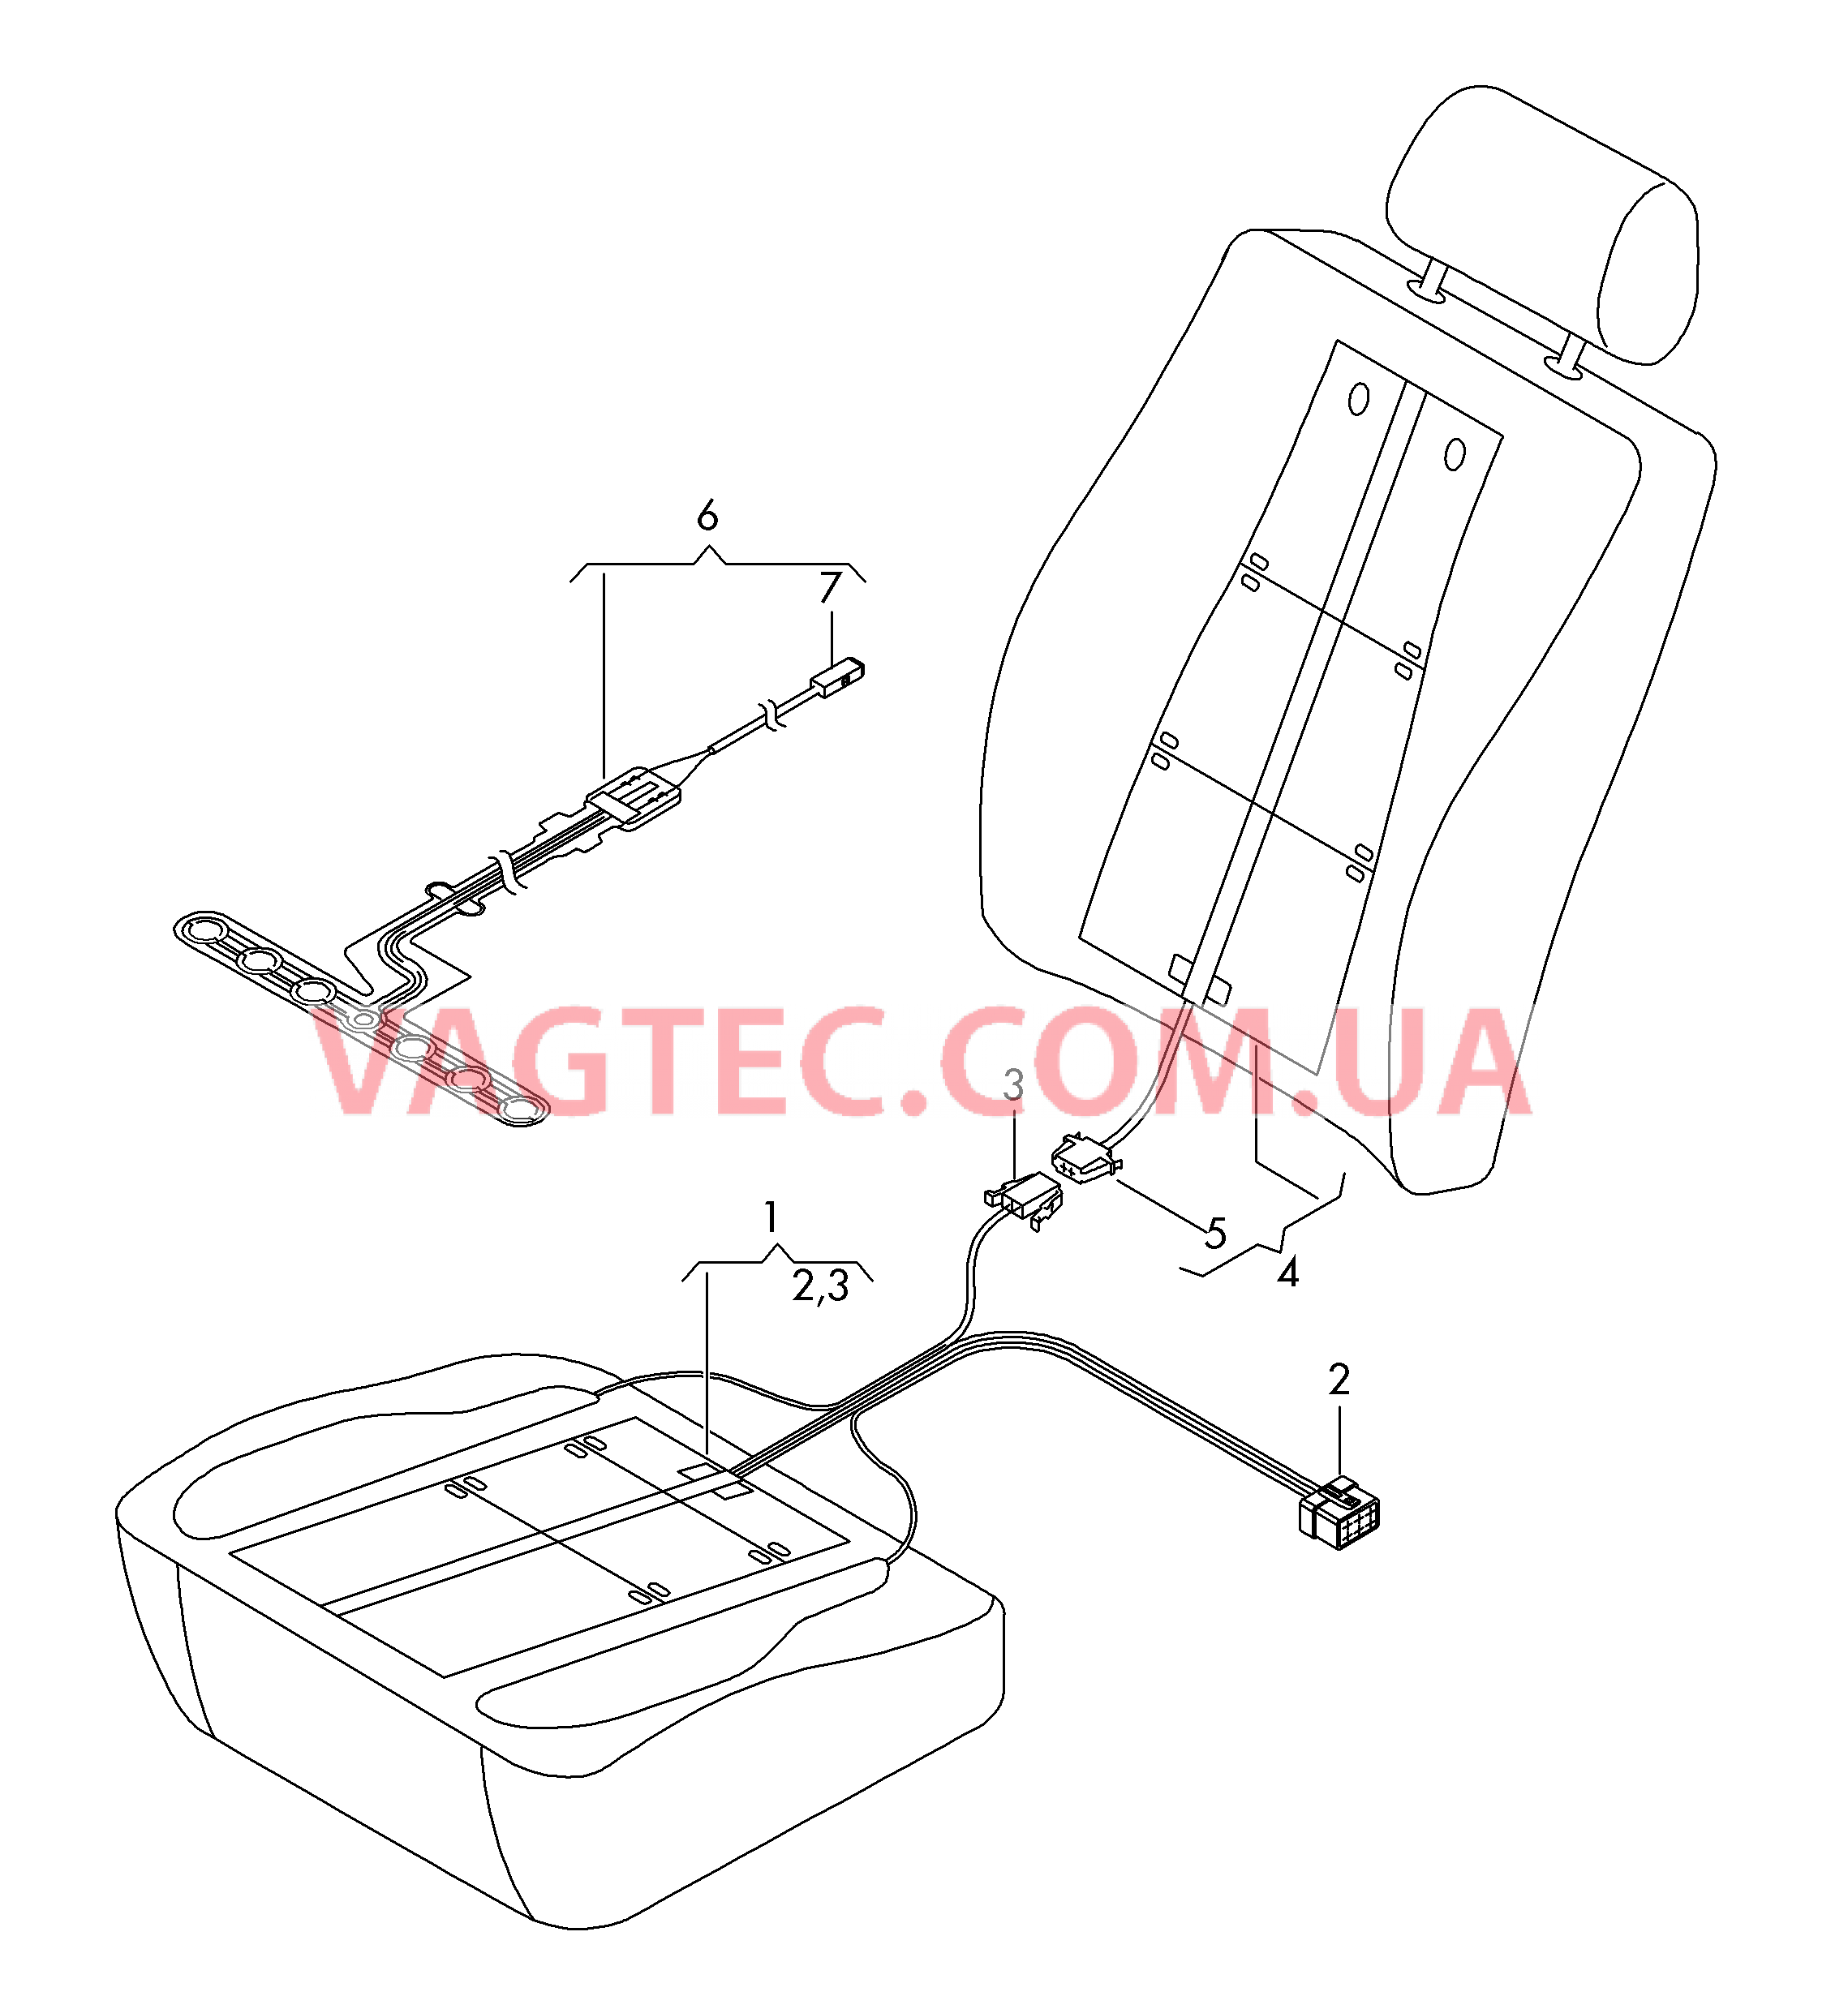 Нагревательный элемент спинки и подушки сиденья  Вставка распознавания занятости сиденья  для SEAT Leon 2018